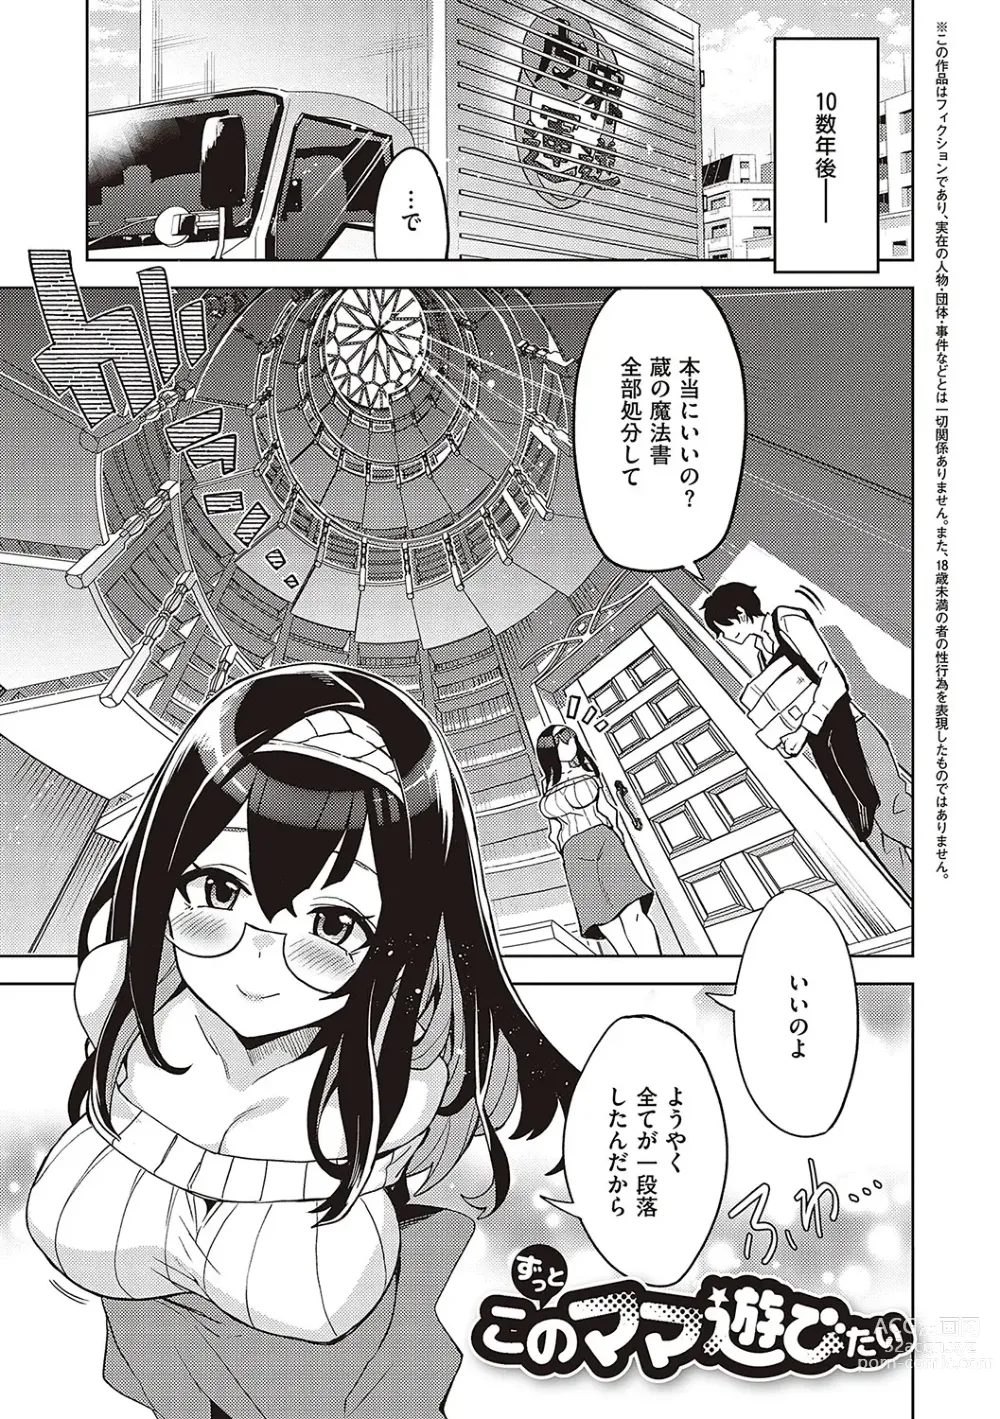 Page 316 of manga Akuma Demo Asobi Desu